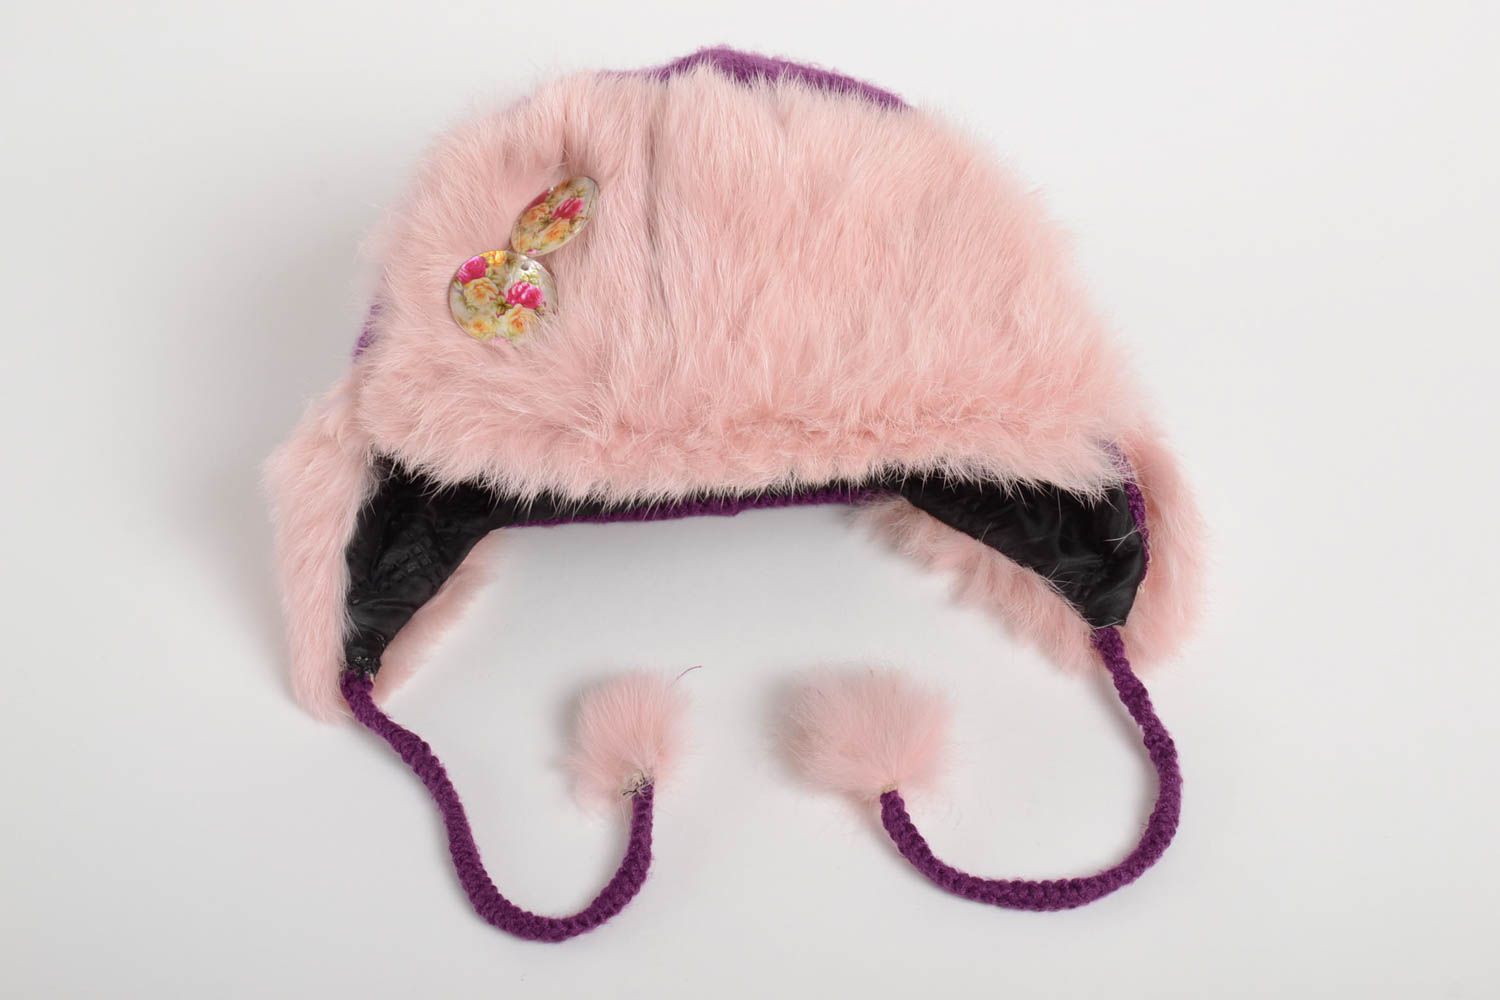 Handmade earflap hat warm earflap hat crochet hat unusual earflap hat gift ideas photo 1